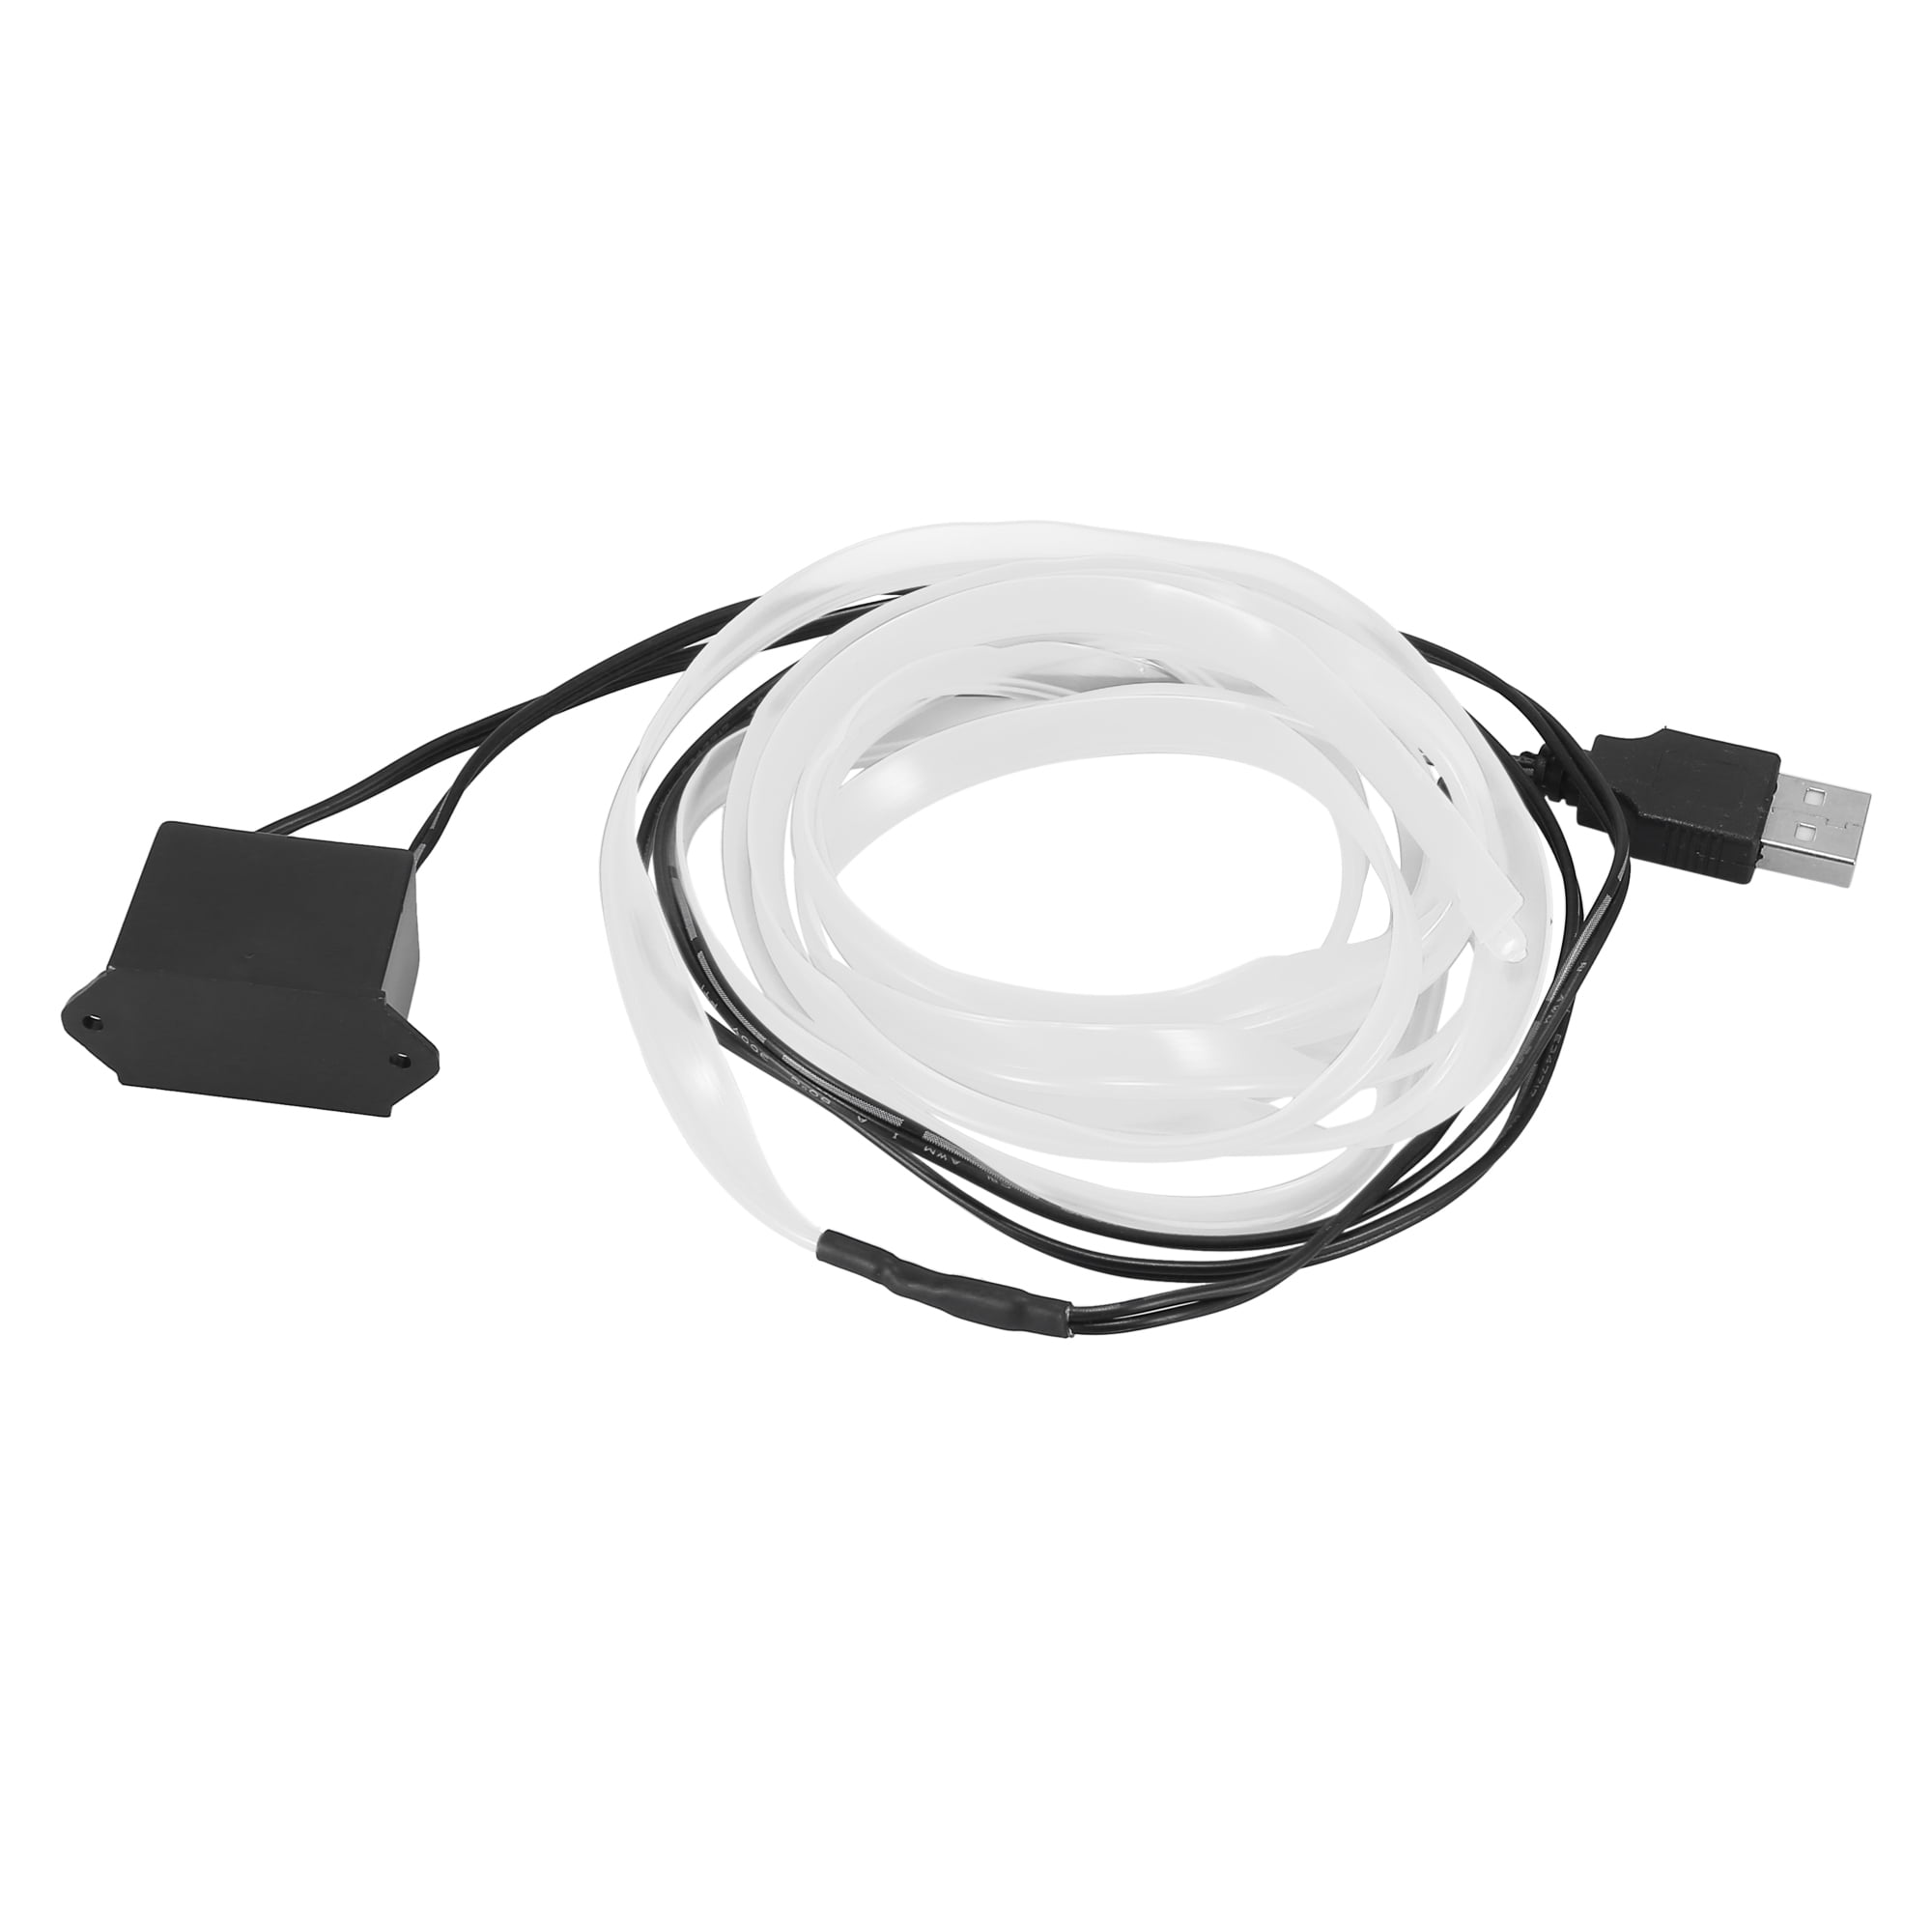 Set - Ambient Light EL Wire optical fiber with inverter 12V, 1 meter